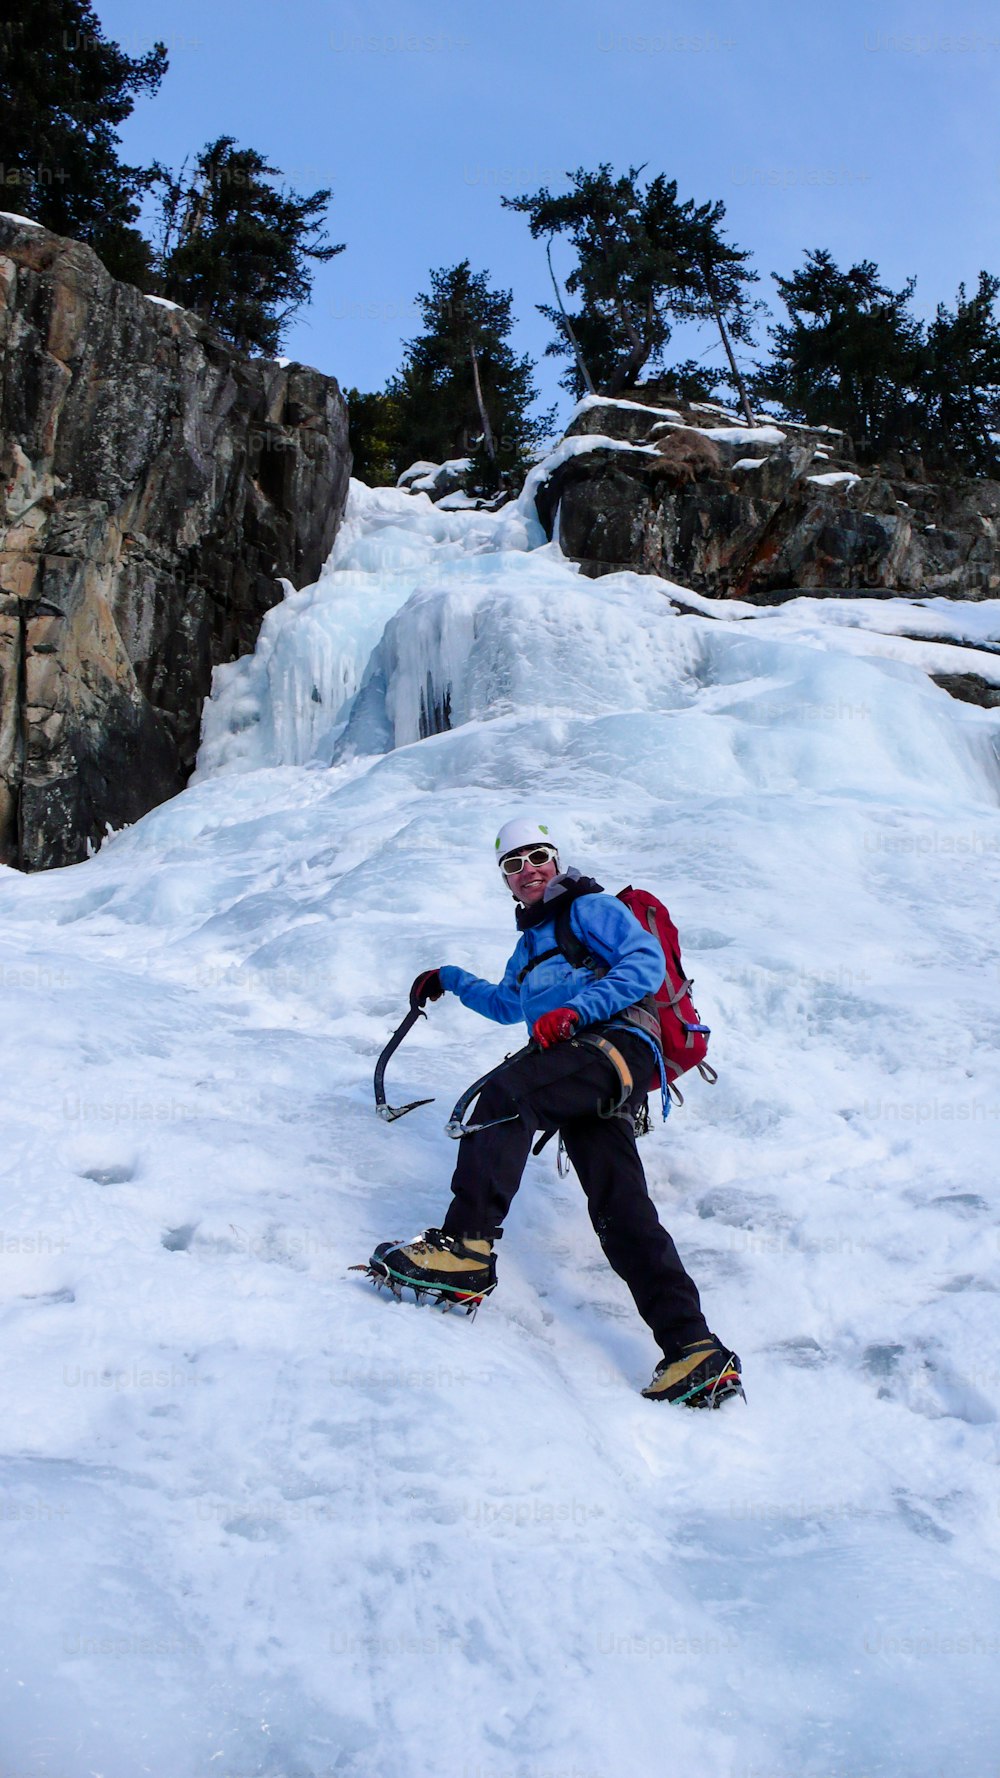 스위스의 깊은 겨울에 알프스에서 등반하는 화려한 얼어붙은 폭포에서 파란색 재킷을 입은 남성 빙벽 등반가